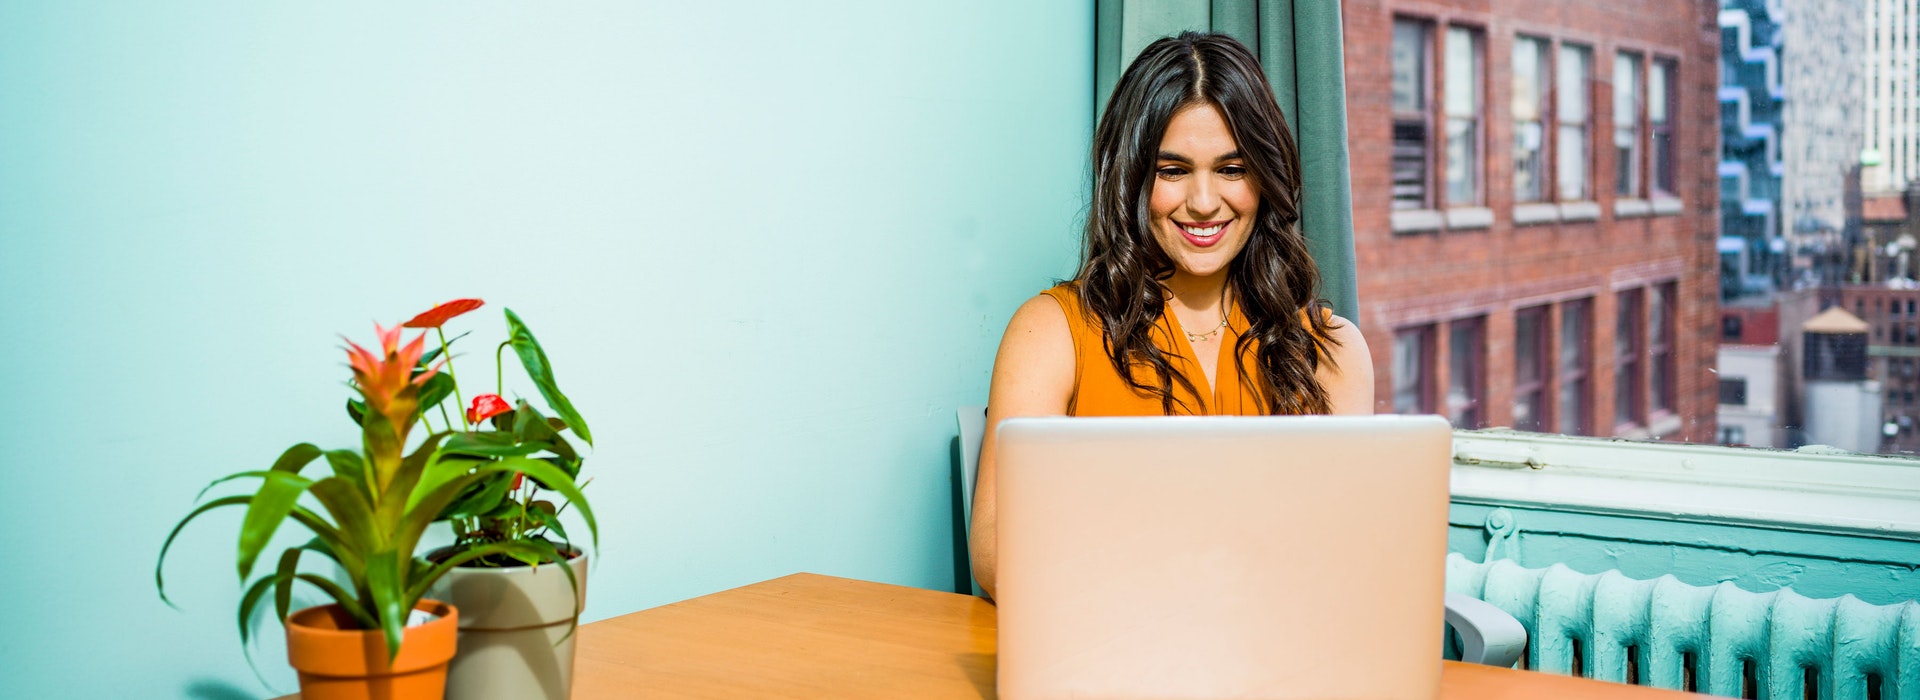 Femme aux longs cheveux foncés assise devant un mur turquoise qui sourit en regardant son ordinateur portable